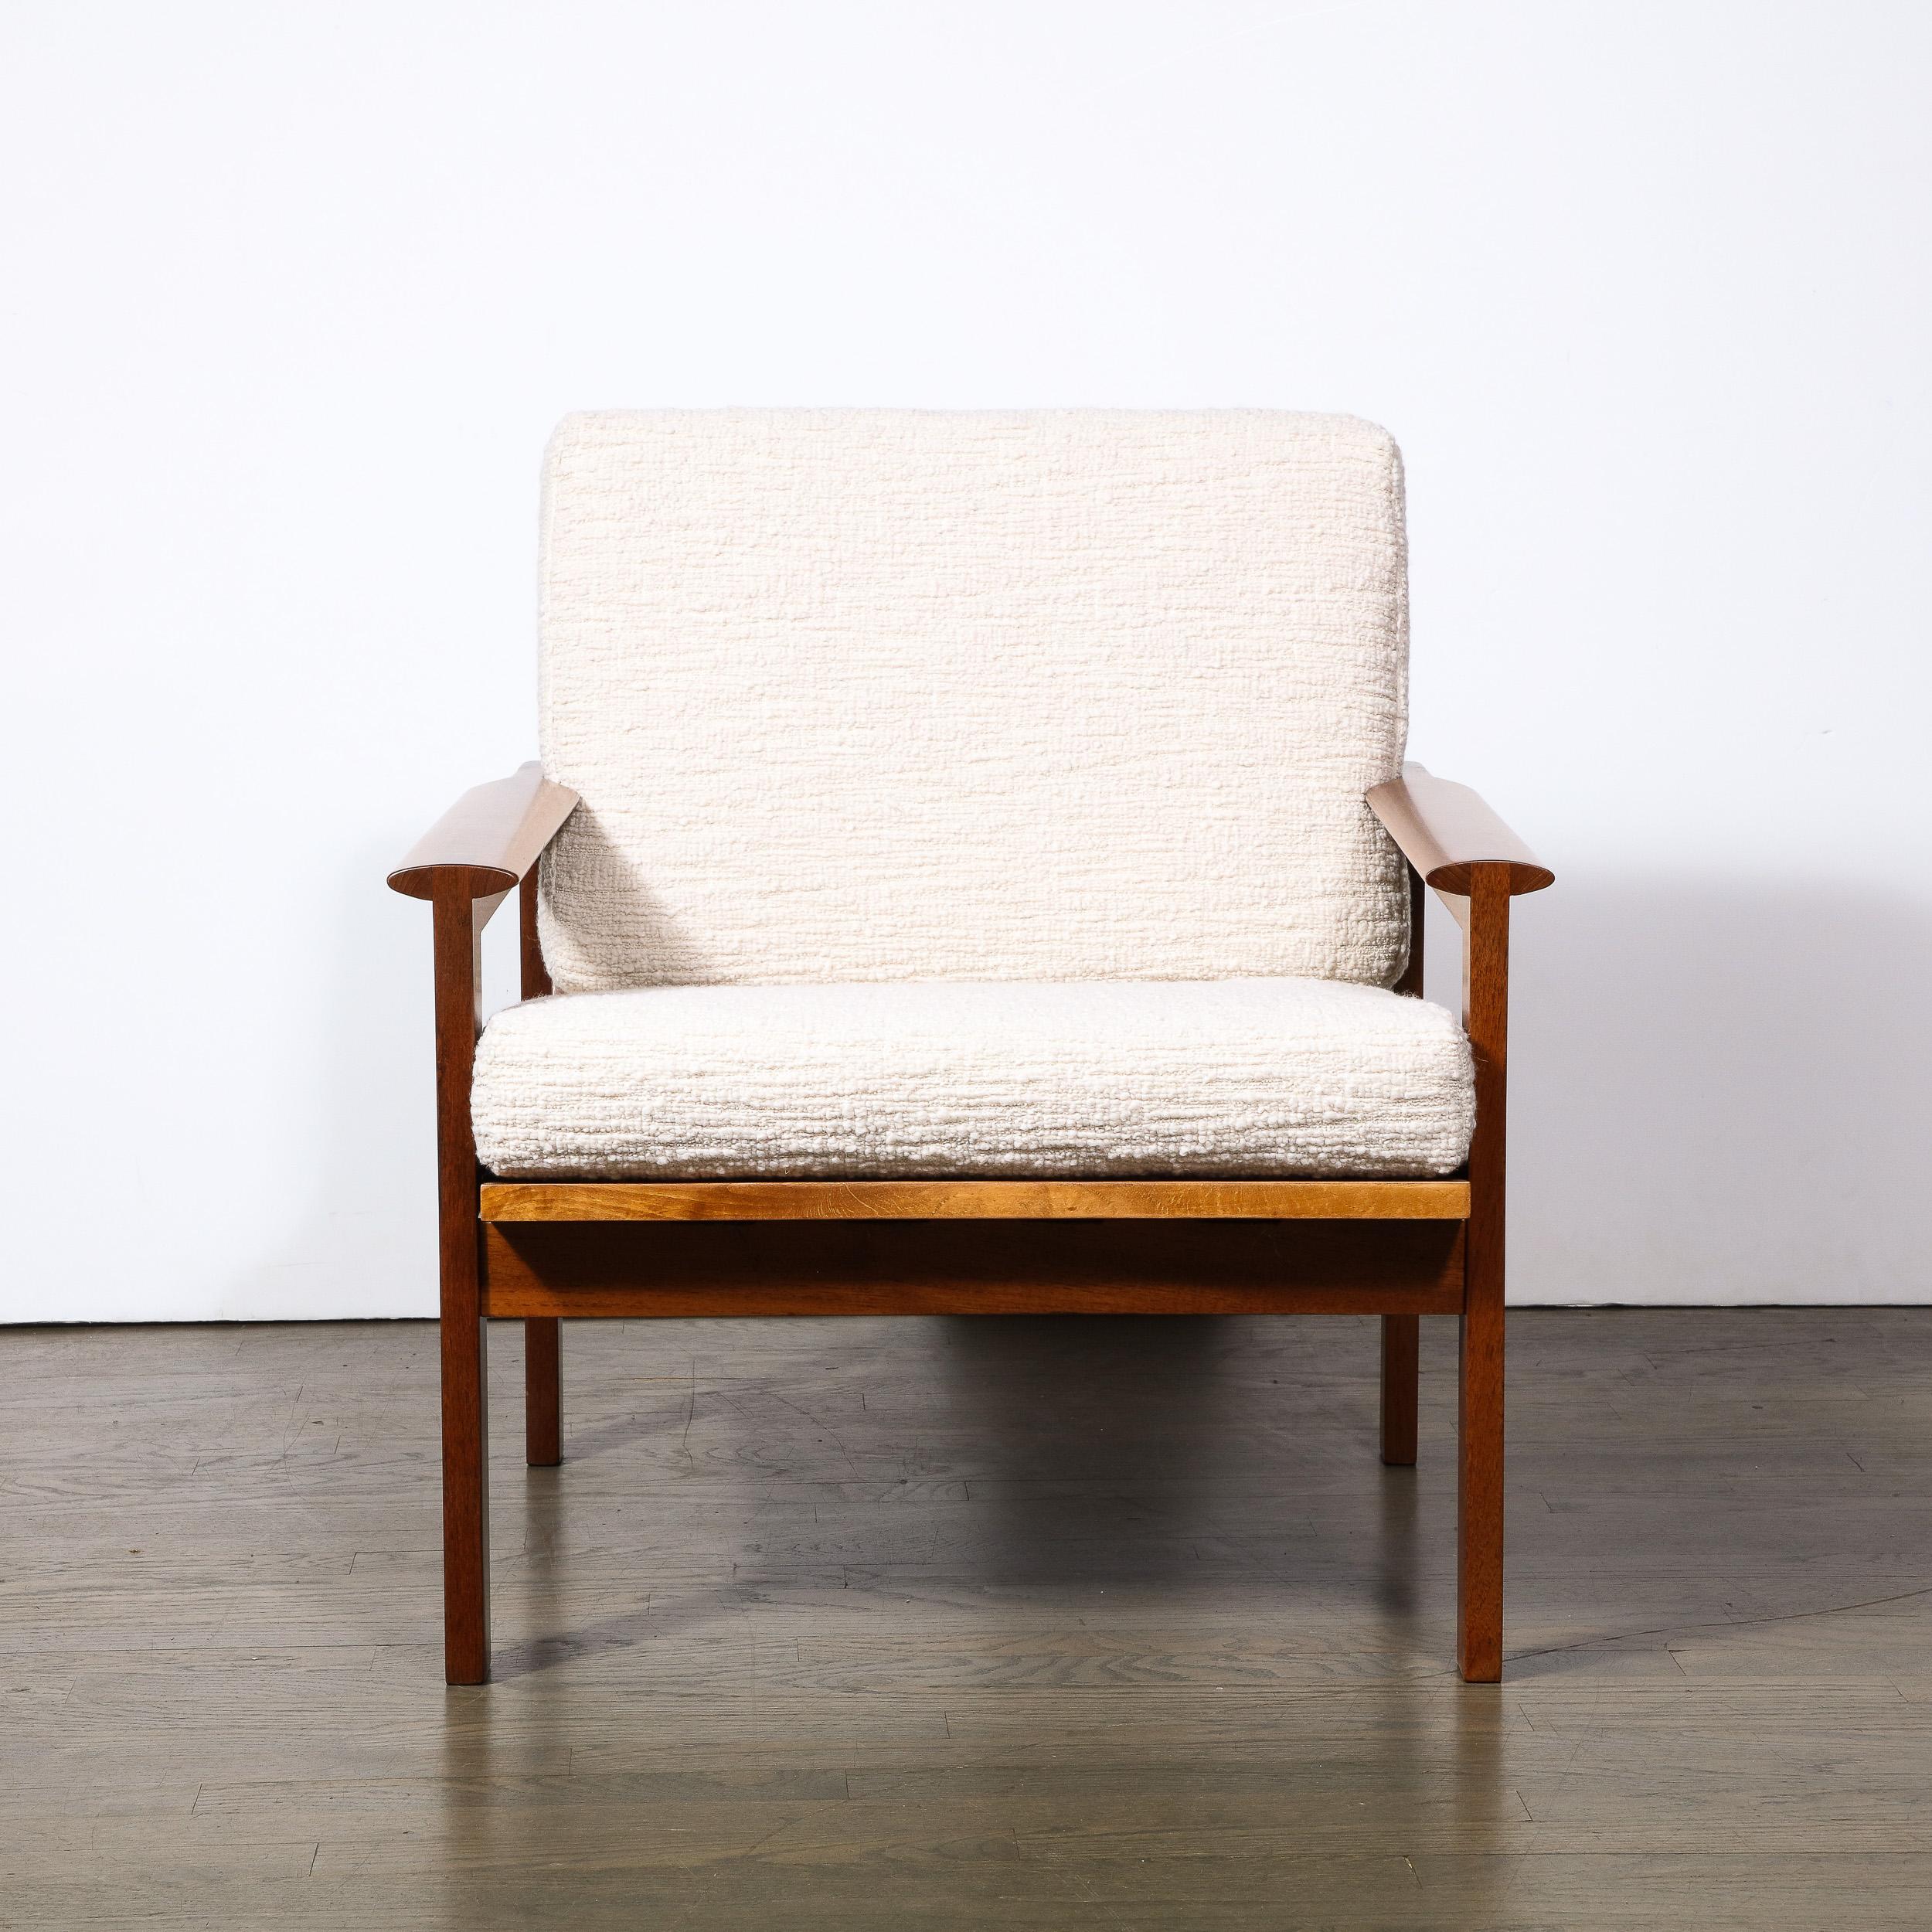 Dieser raffinierte skandinavische Mid-Century-Modern-Sessel wurde um 1960 von dem angesehenen Designer George Tanier in Dänemark entworfen. Dieses Werk ist eine einfache Studie über erstklassiges Design und darüber, wie elementare Formen zu einem